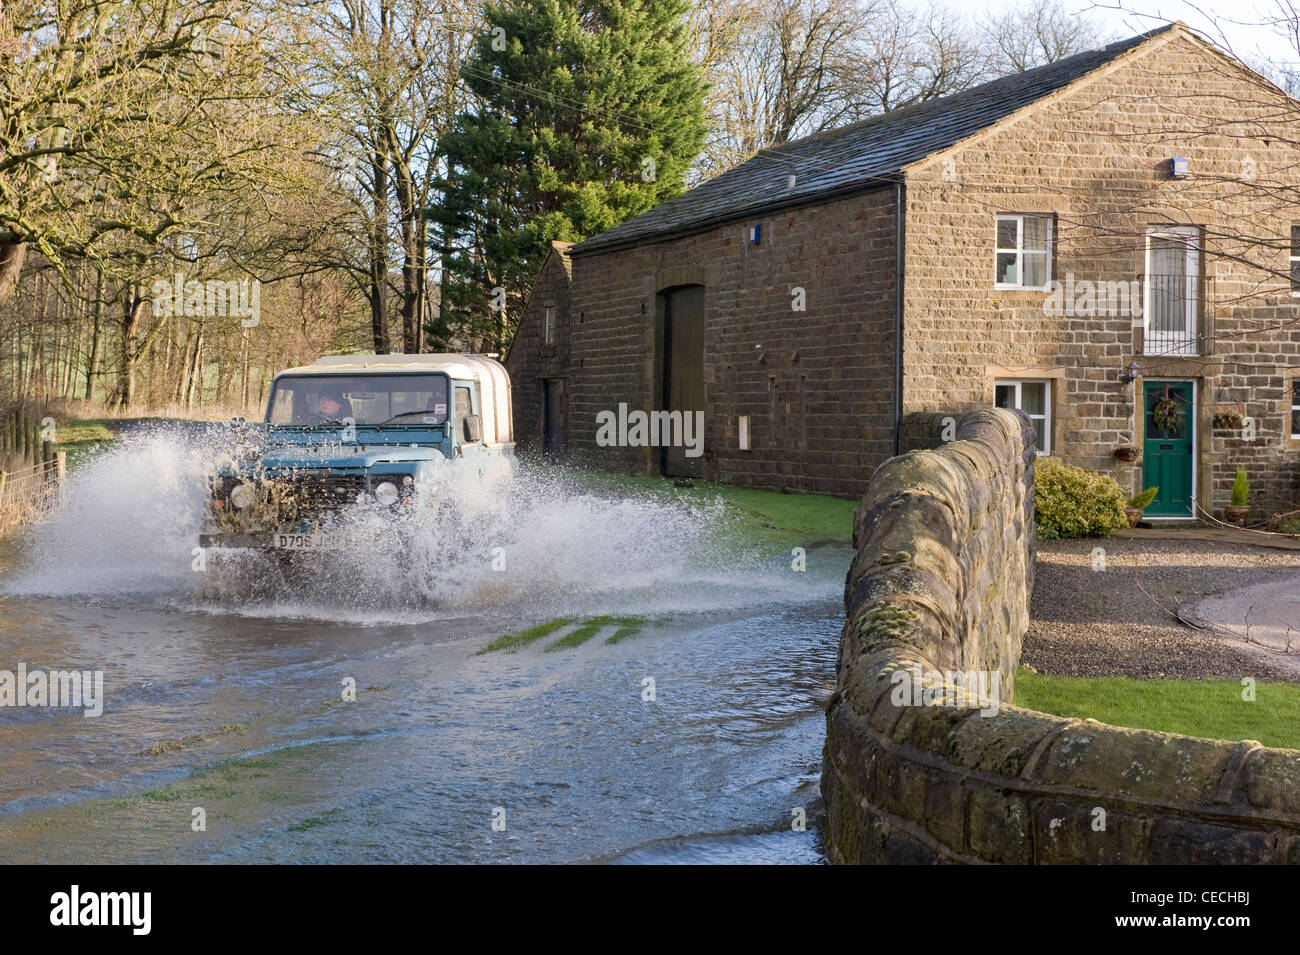 Inondations - Land Rover Defender & conduite éclaboussant par des eaux d'inondation sur les routes rurales inondées après les pluies torrentielles - North Yorkshire, England, UK Banque D'Images